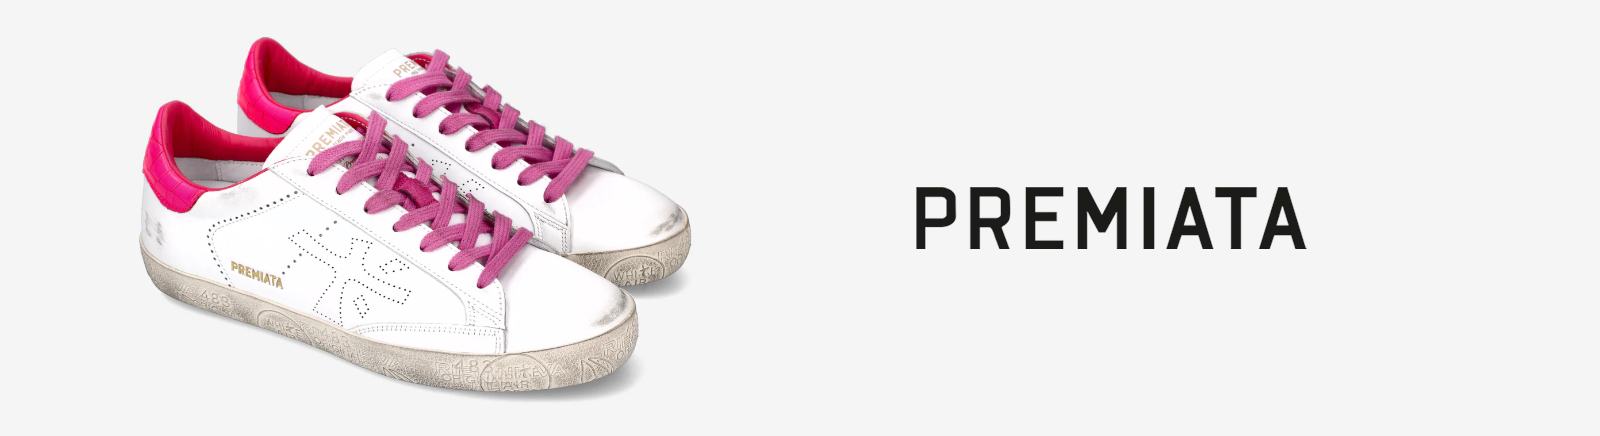 Premiata Schuhe online kaufen im Shop von Prange